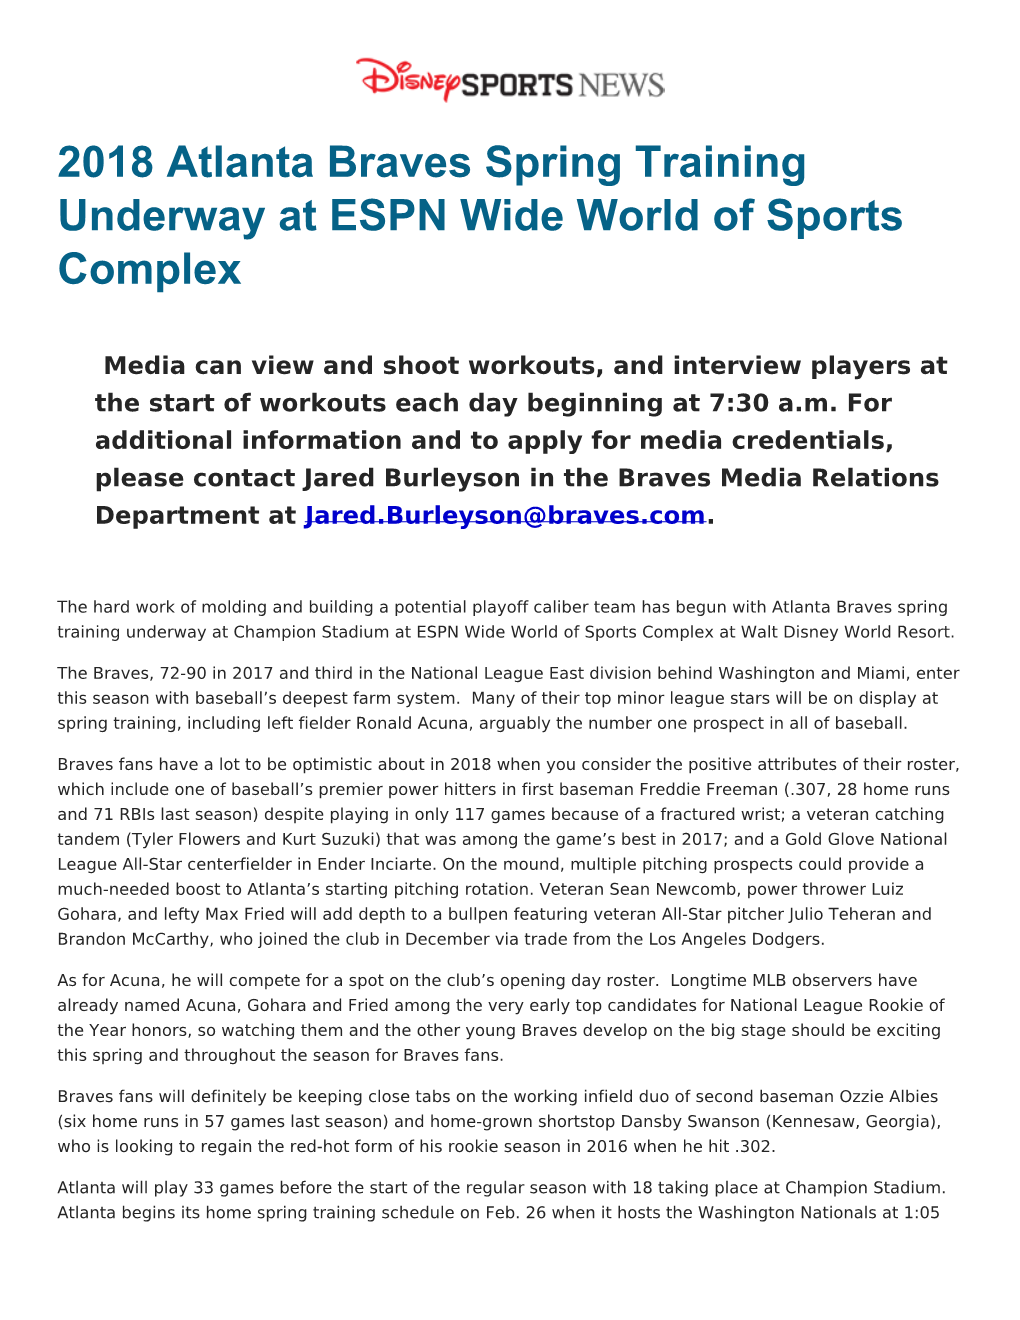 2018 Atlanta Braves Spring Training Underway at ESPN Wide World of Sports Complex